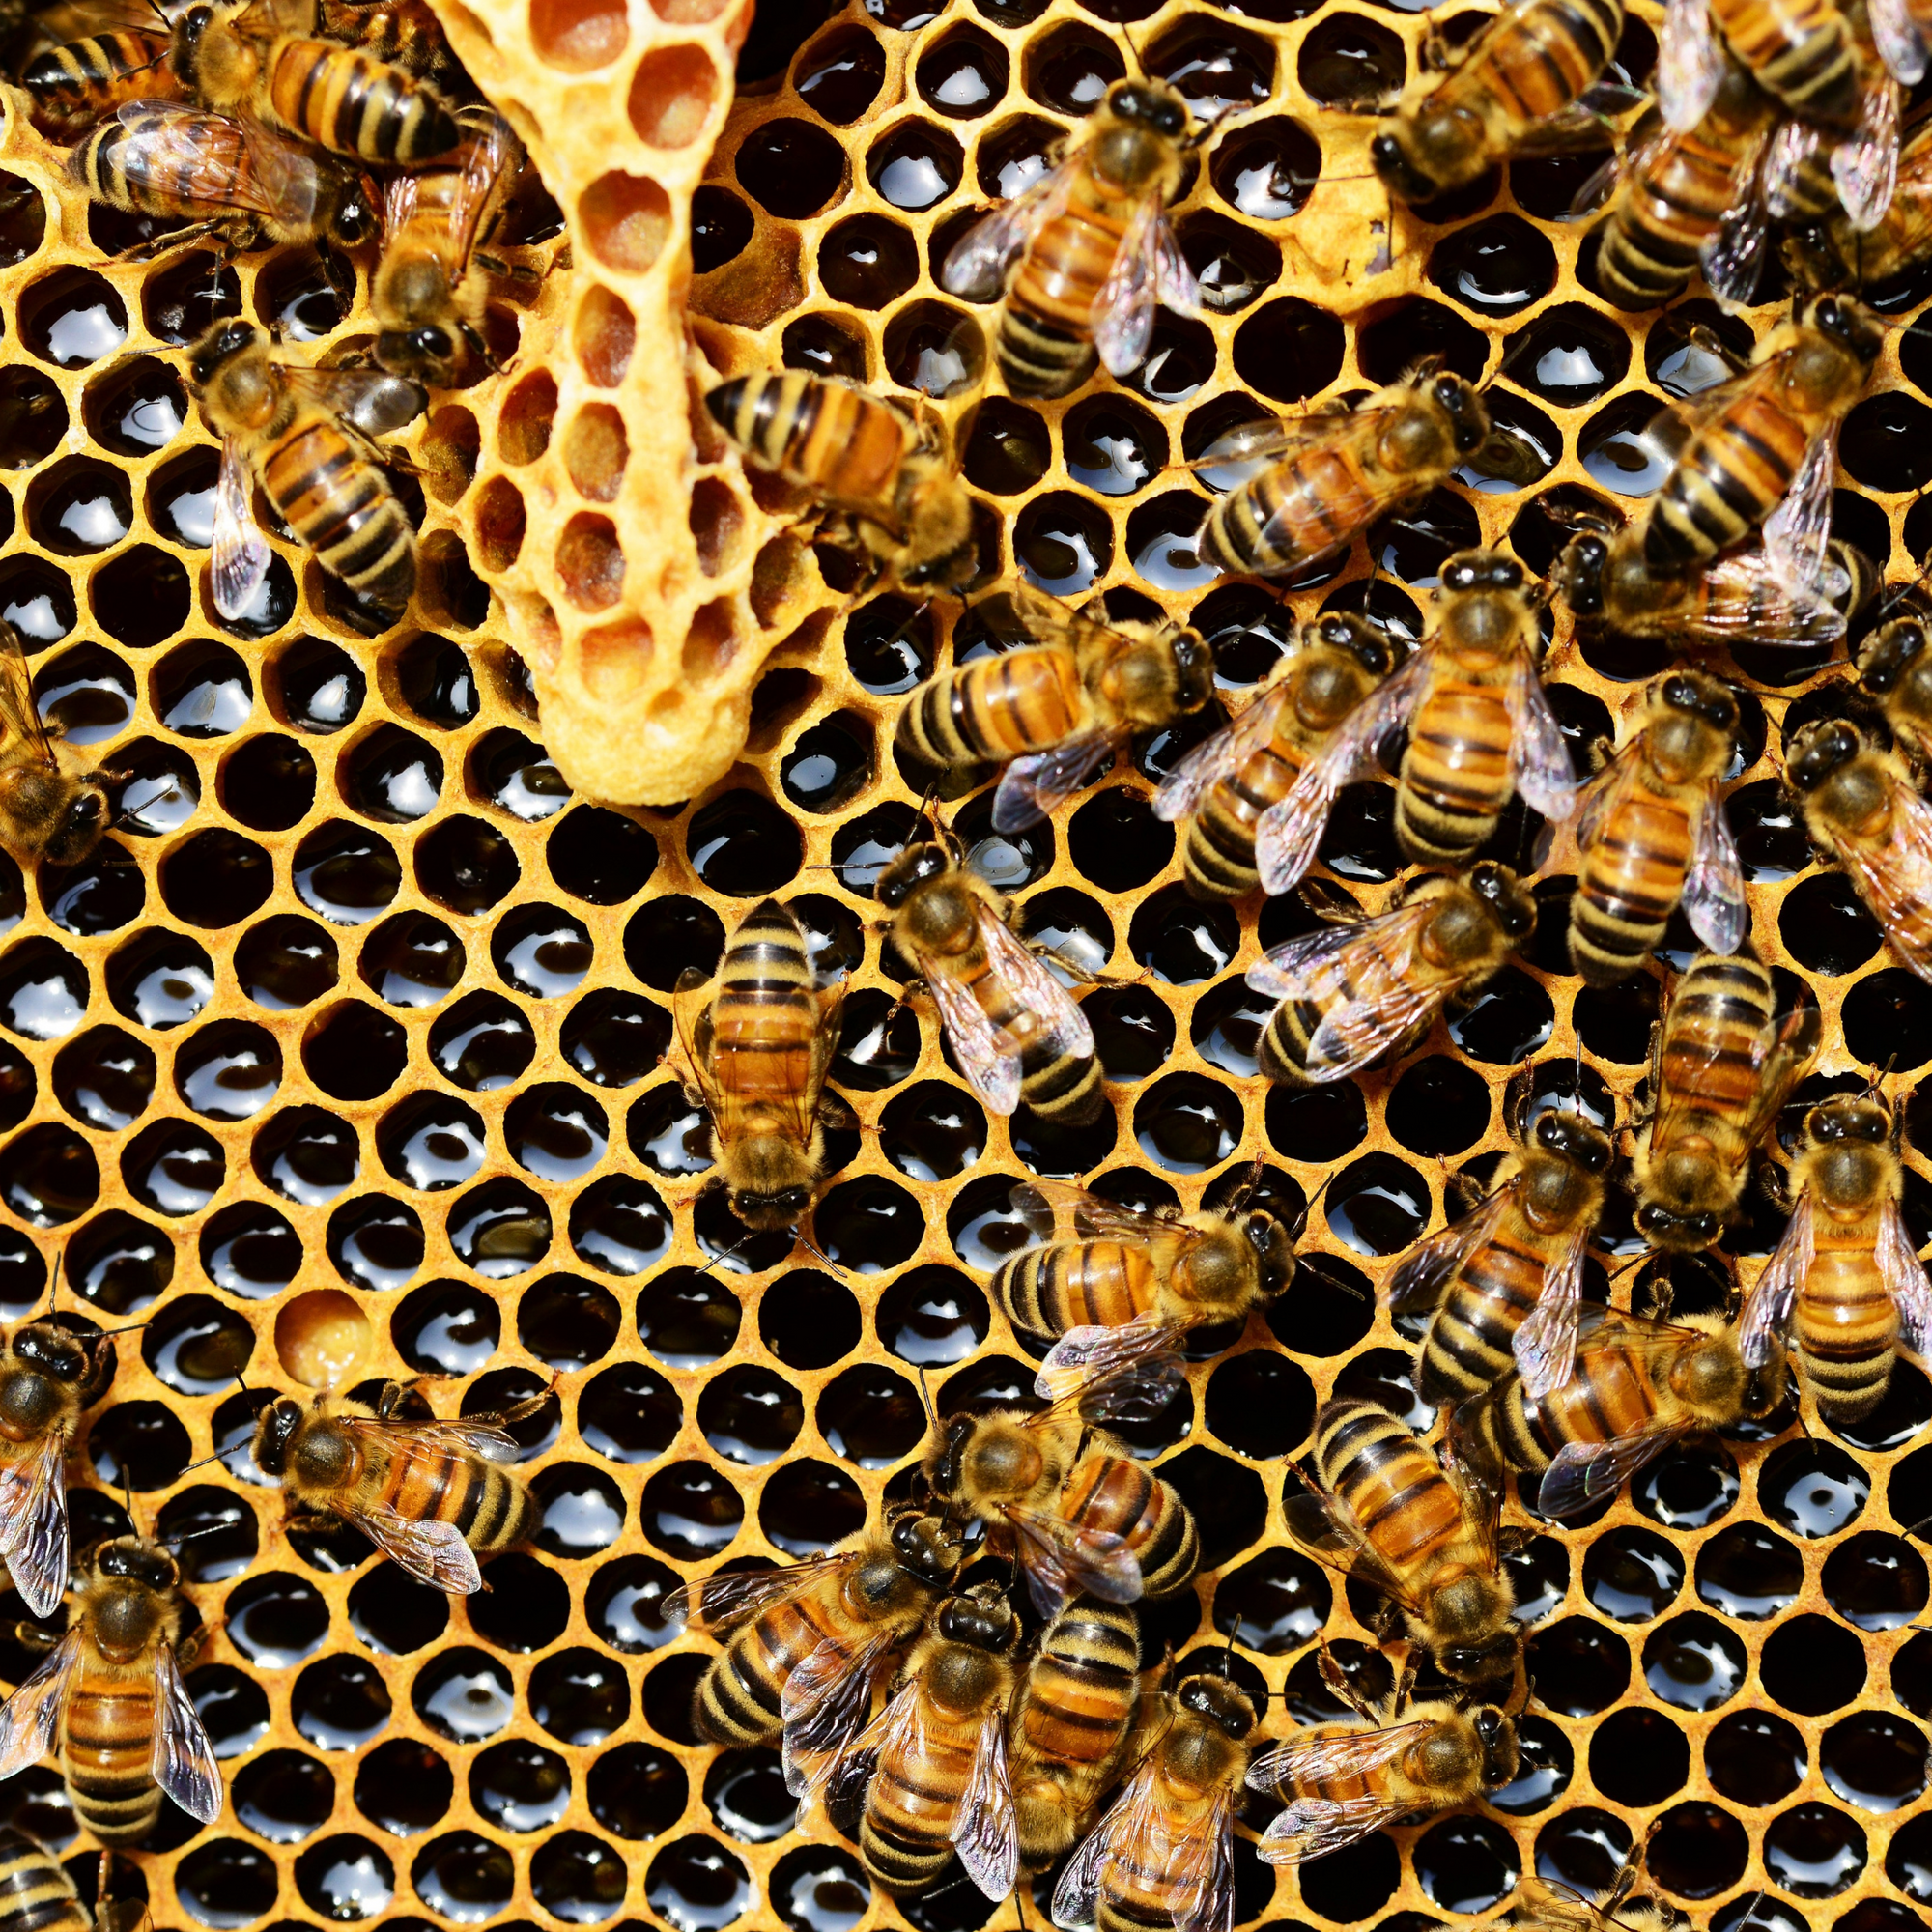 Honigbienen sind keine bedrohte Tierart: Warum wir einfach mehr Imker brauchen